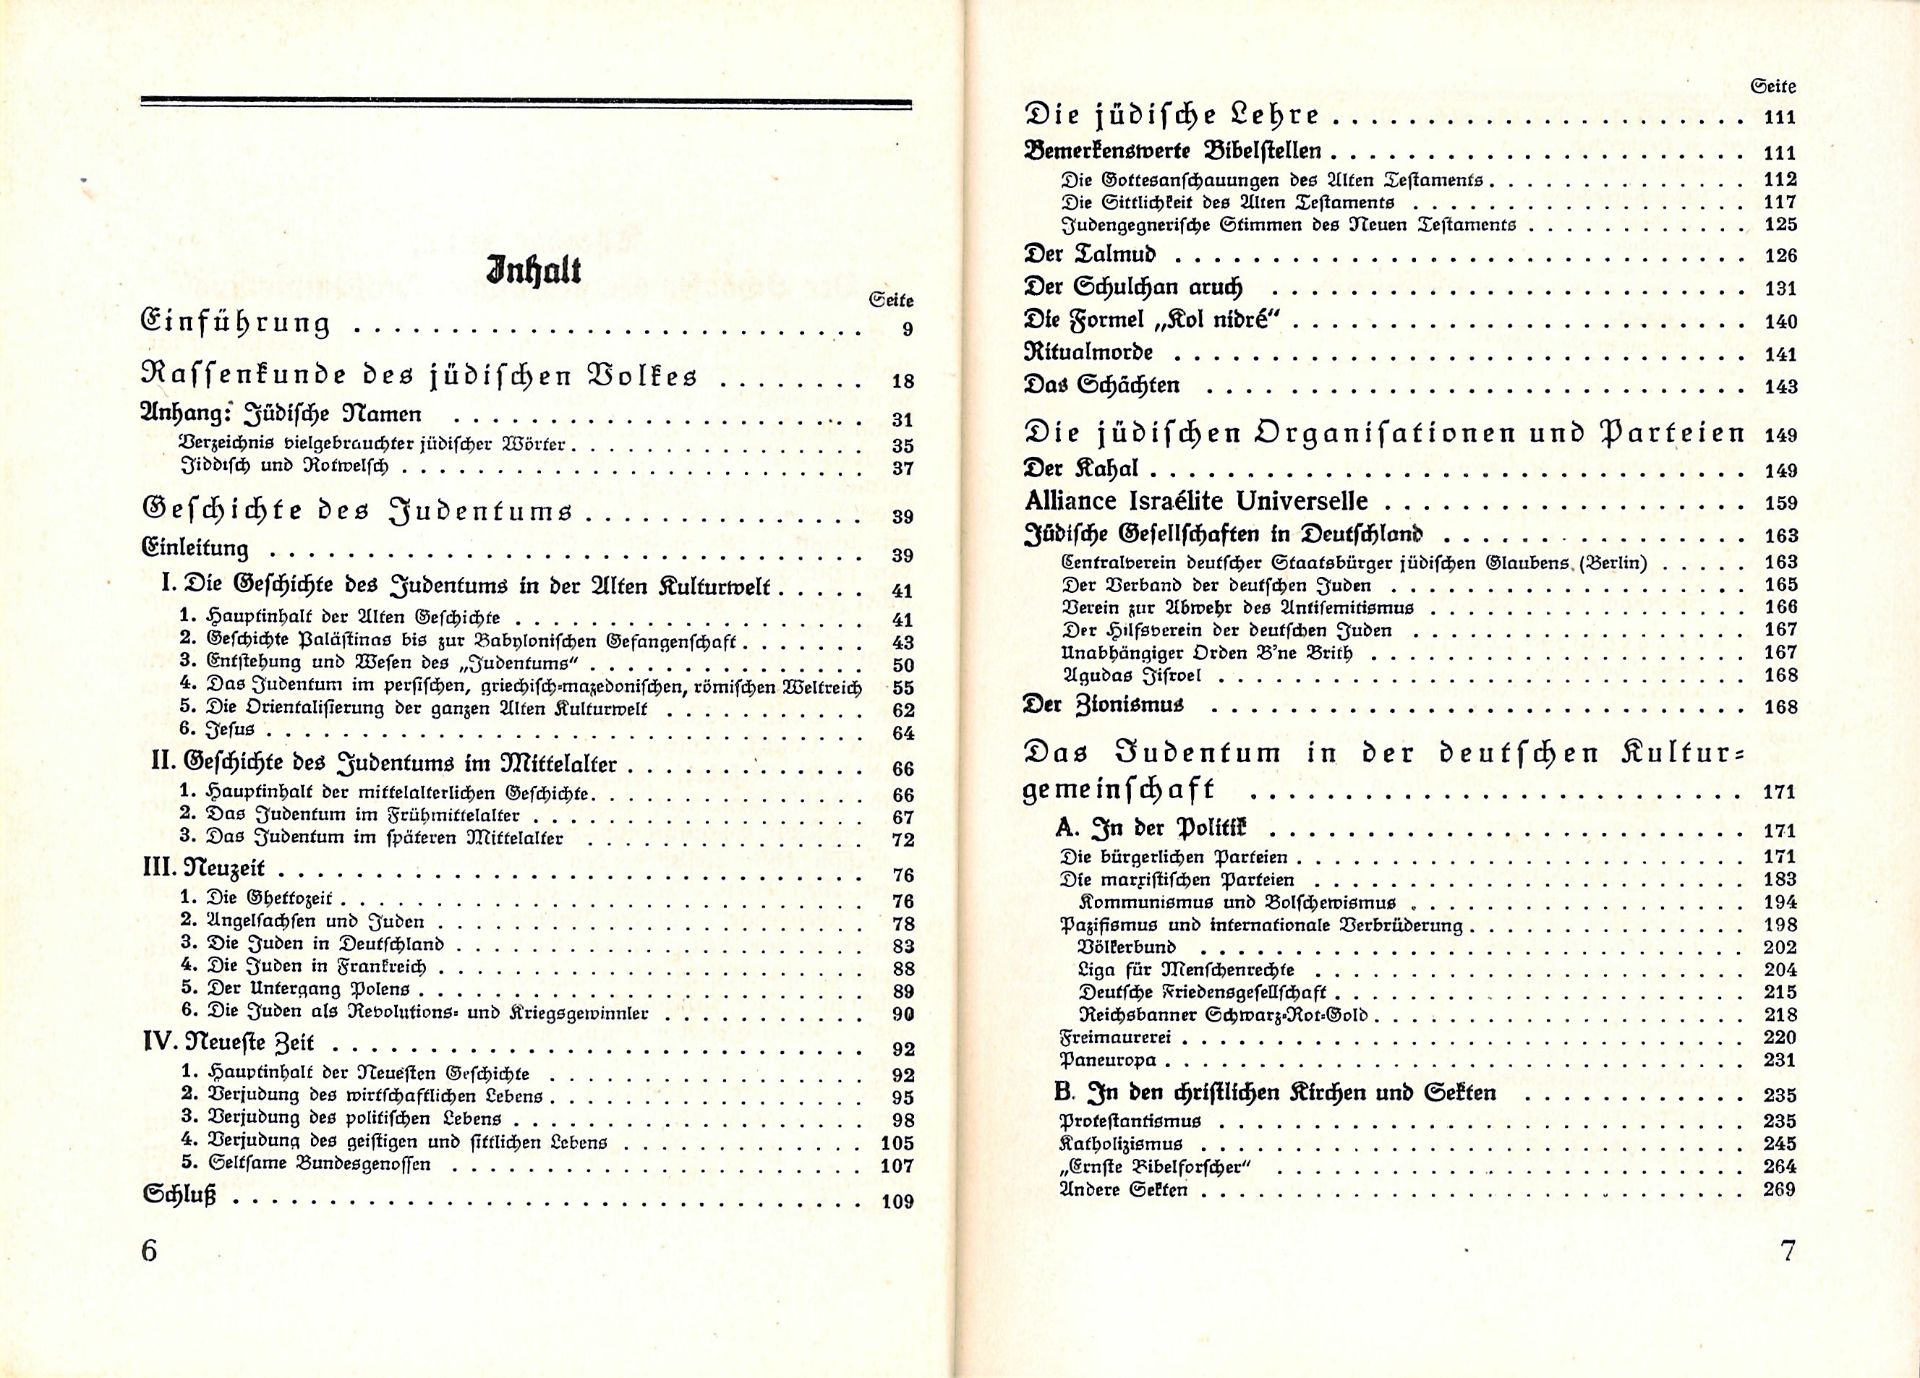 Theodor Fritsch, Handbuch der Judenfrage. Die wichtigsten Tatsachen zur Beurteilung des jüdischen - Image 2 of 3